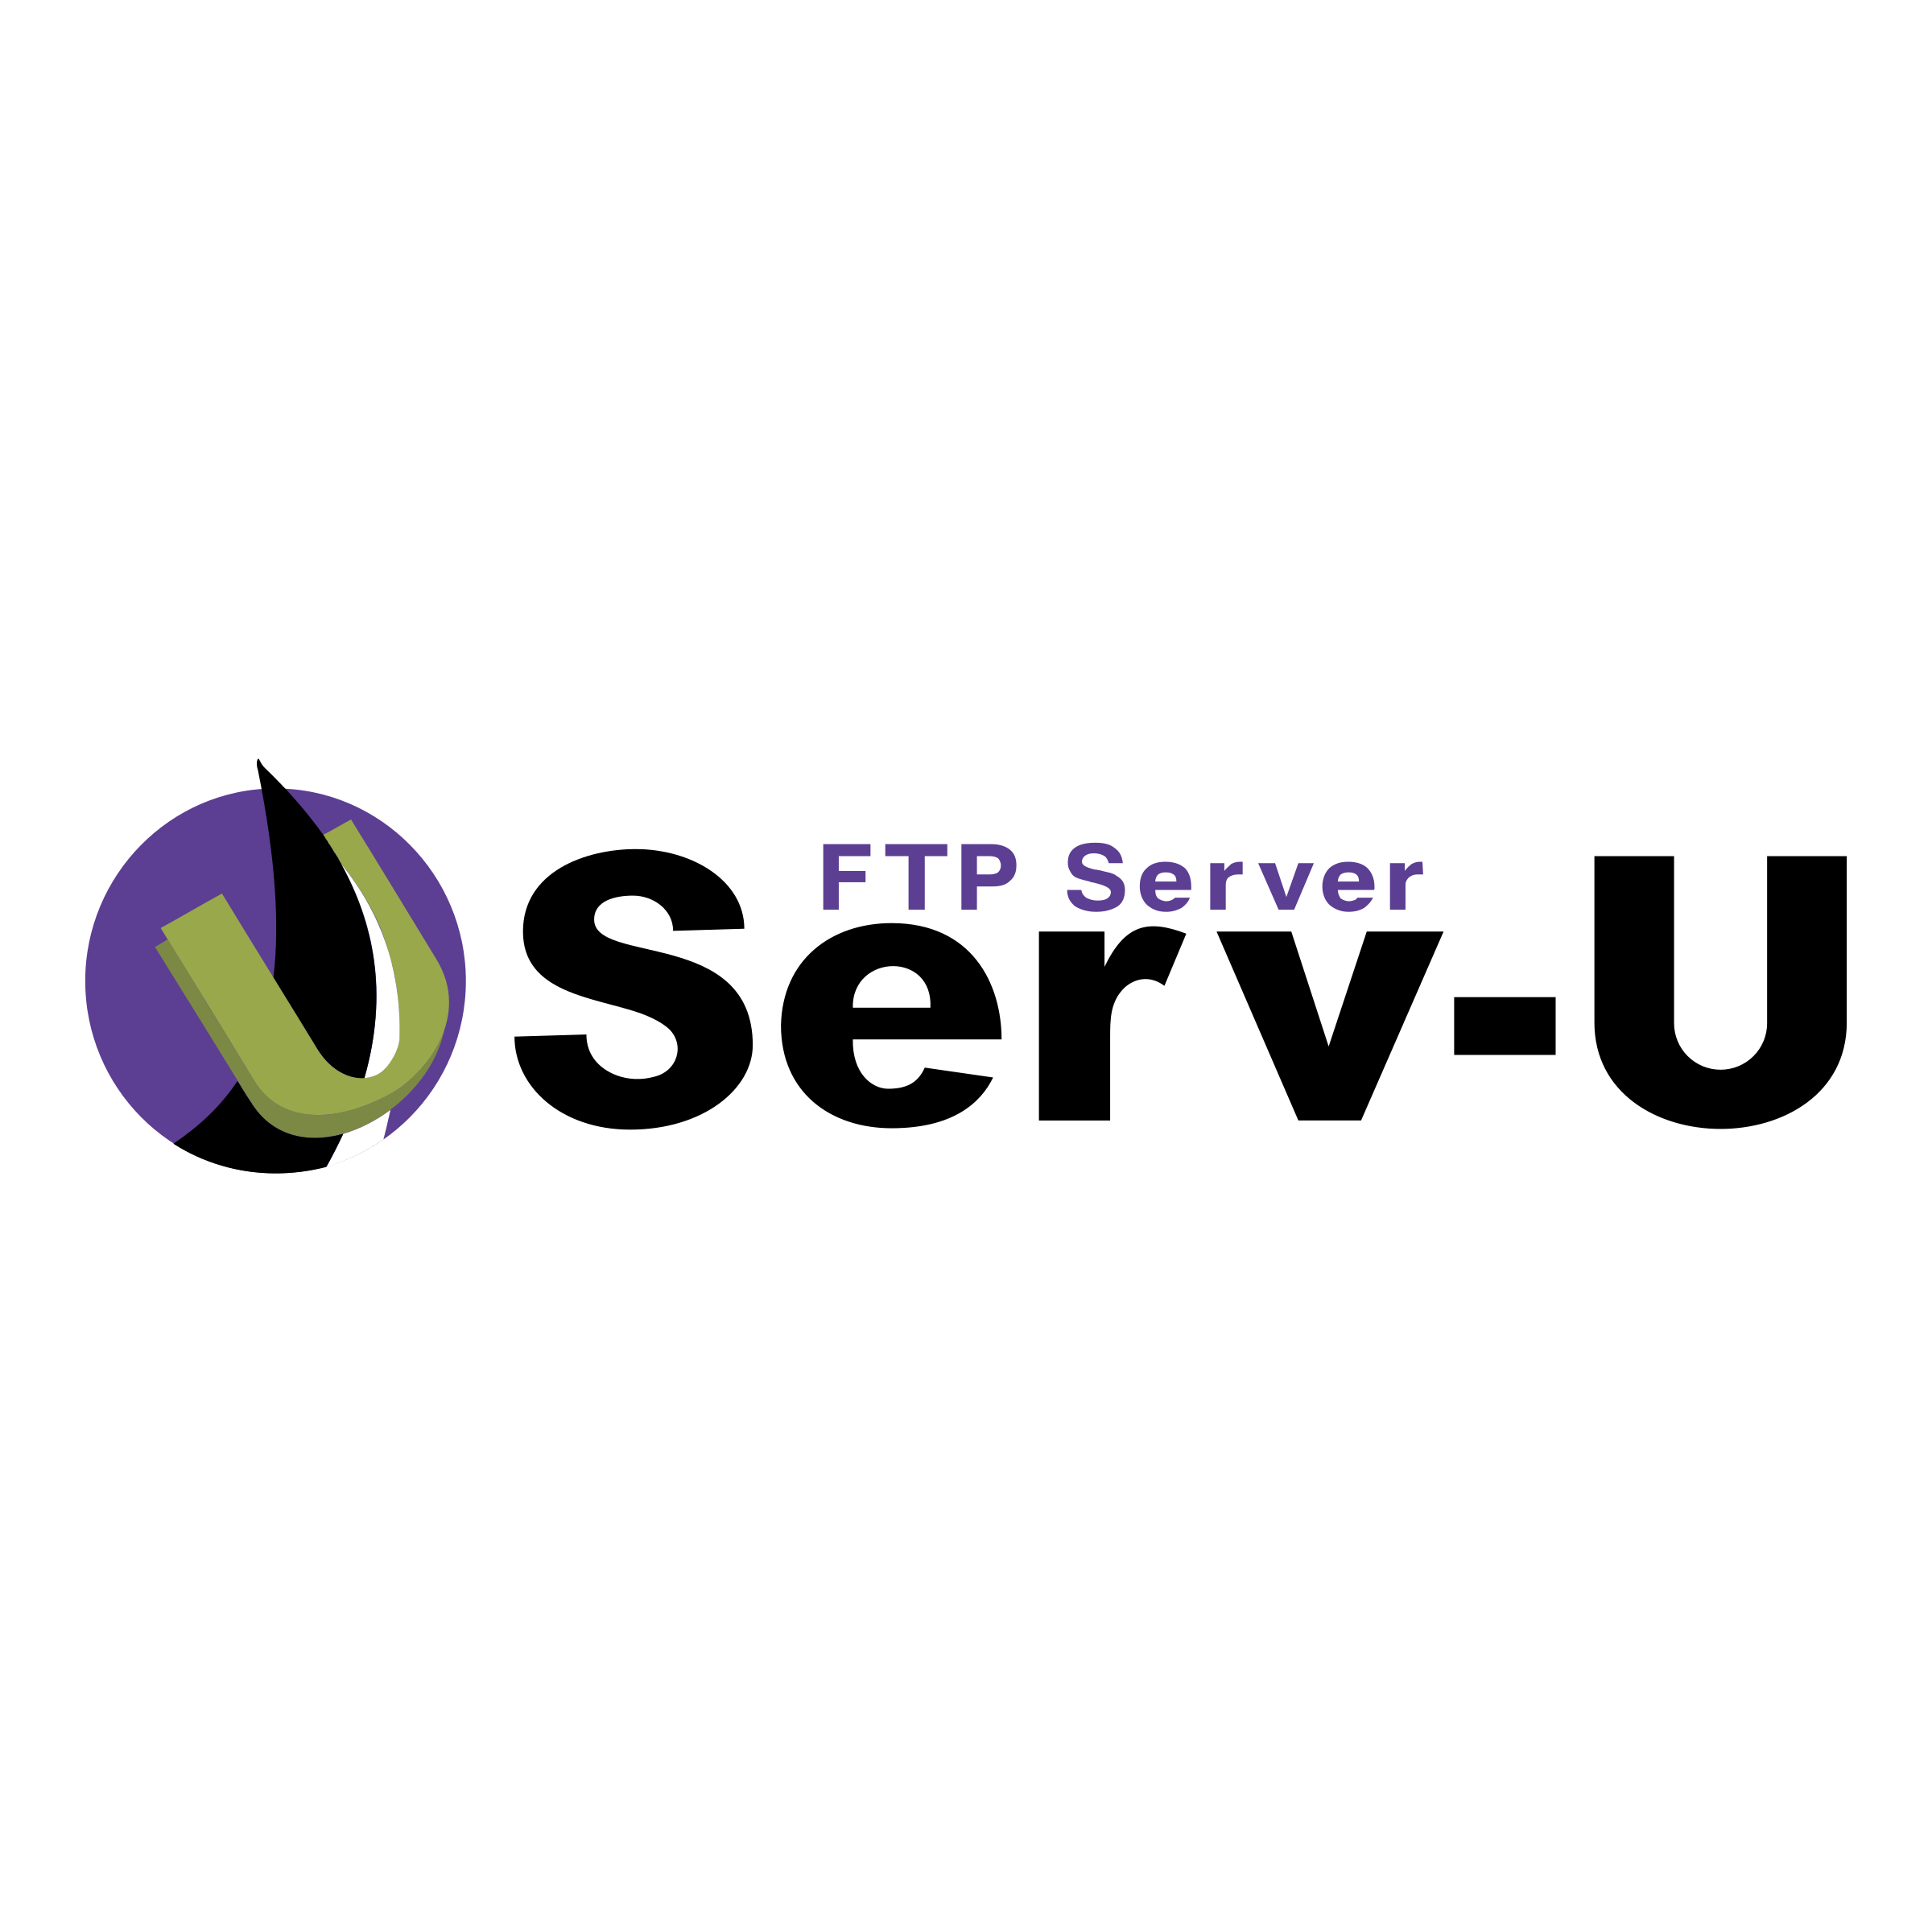 FTP Logo - Serv U FTP Server Logo PNG Transparent & SVG Vector